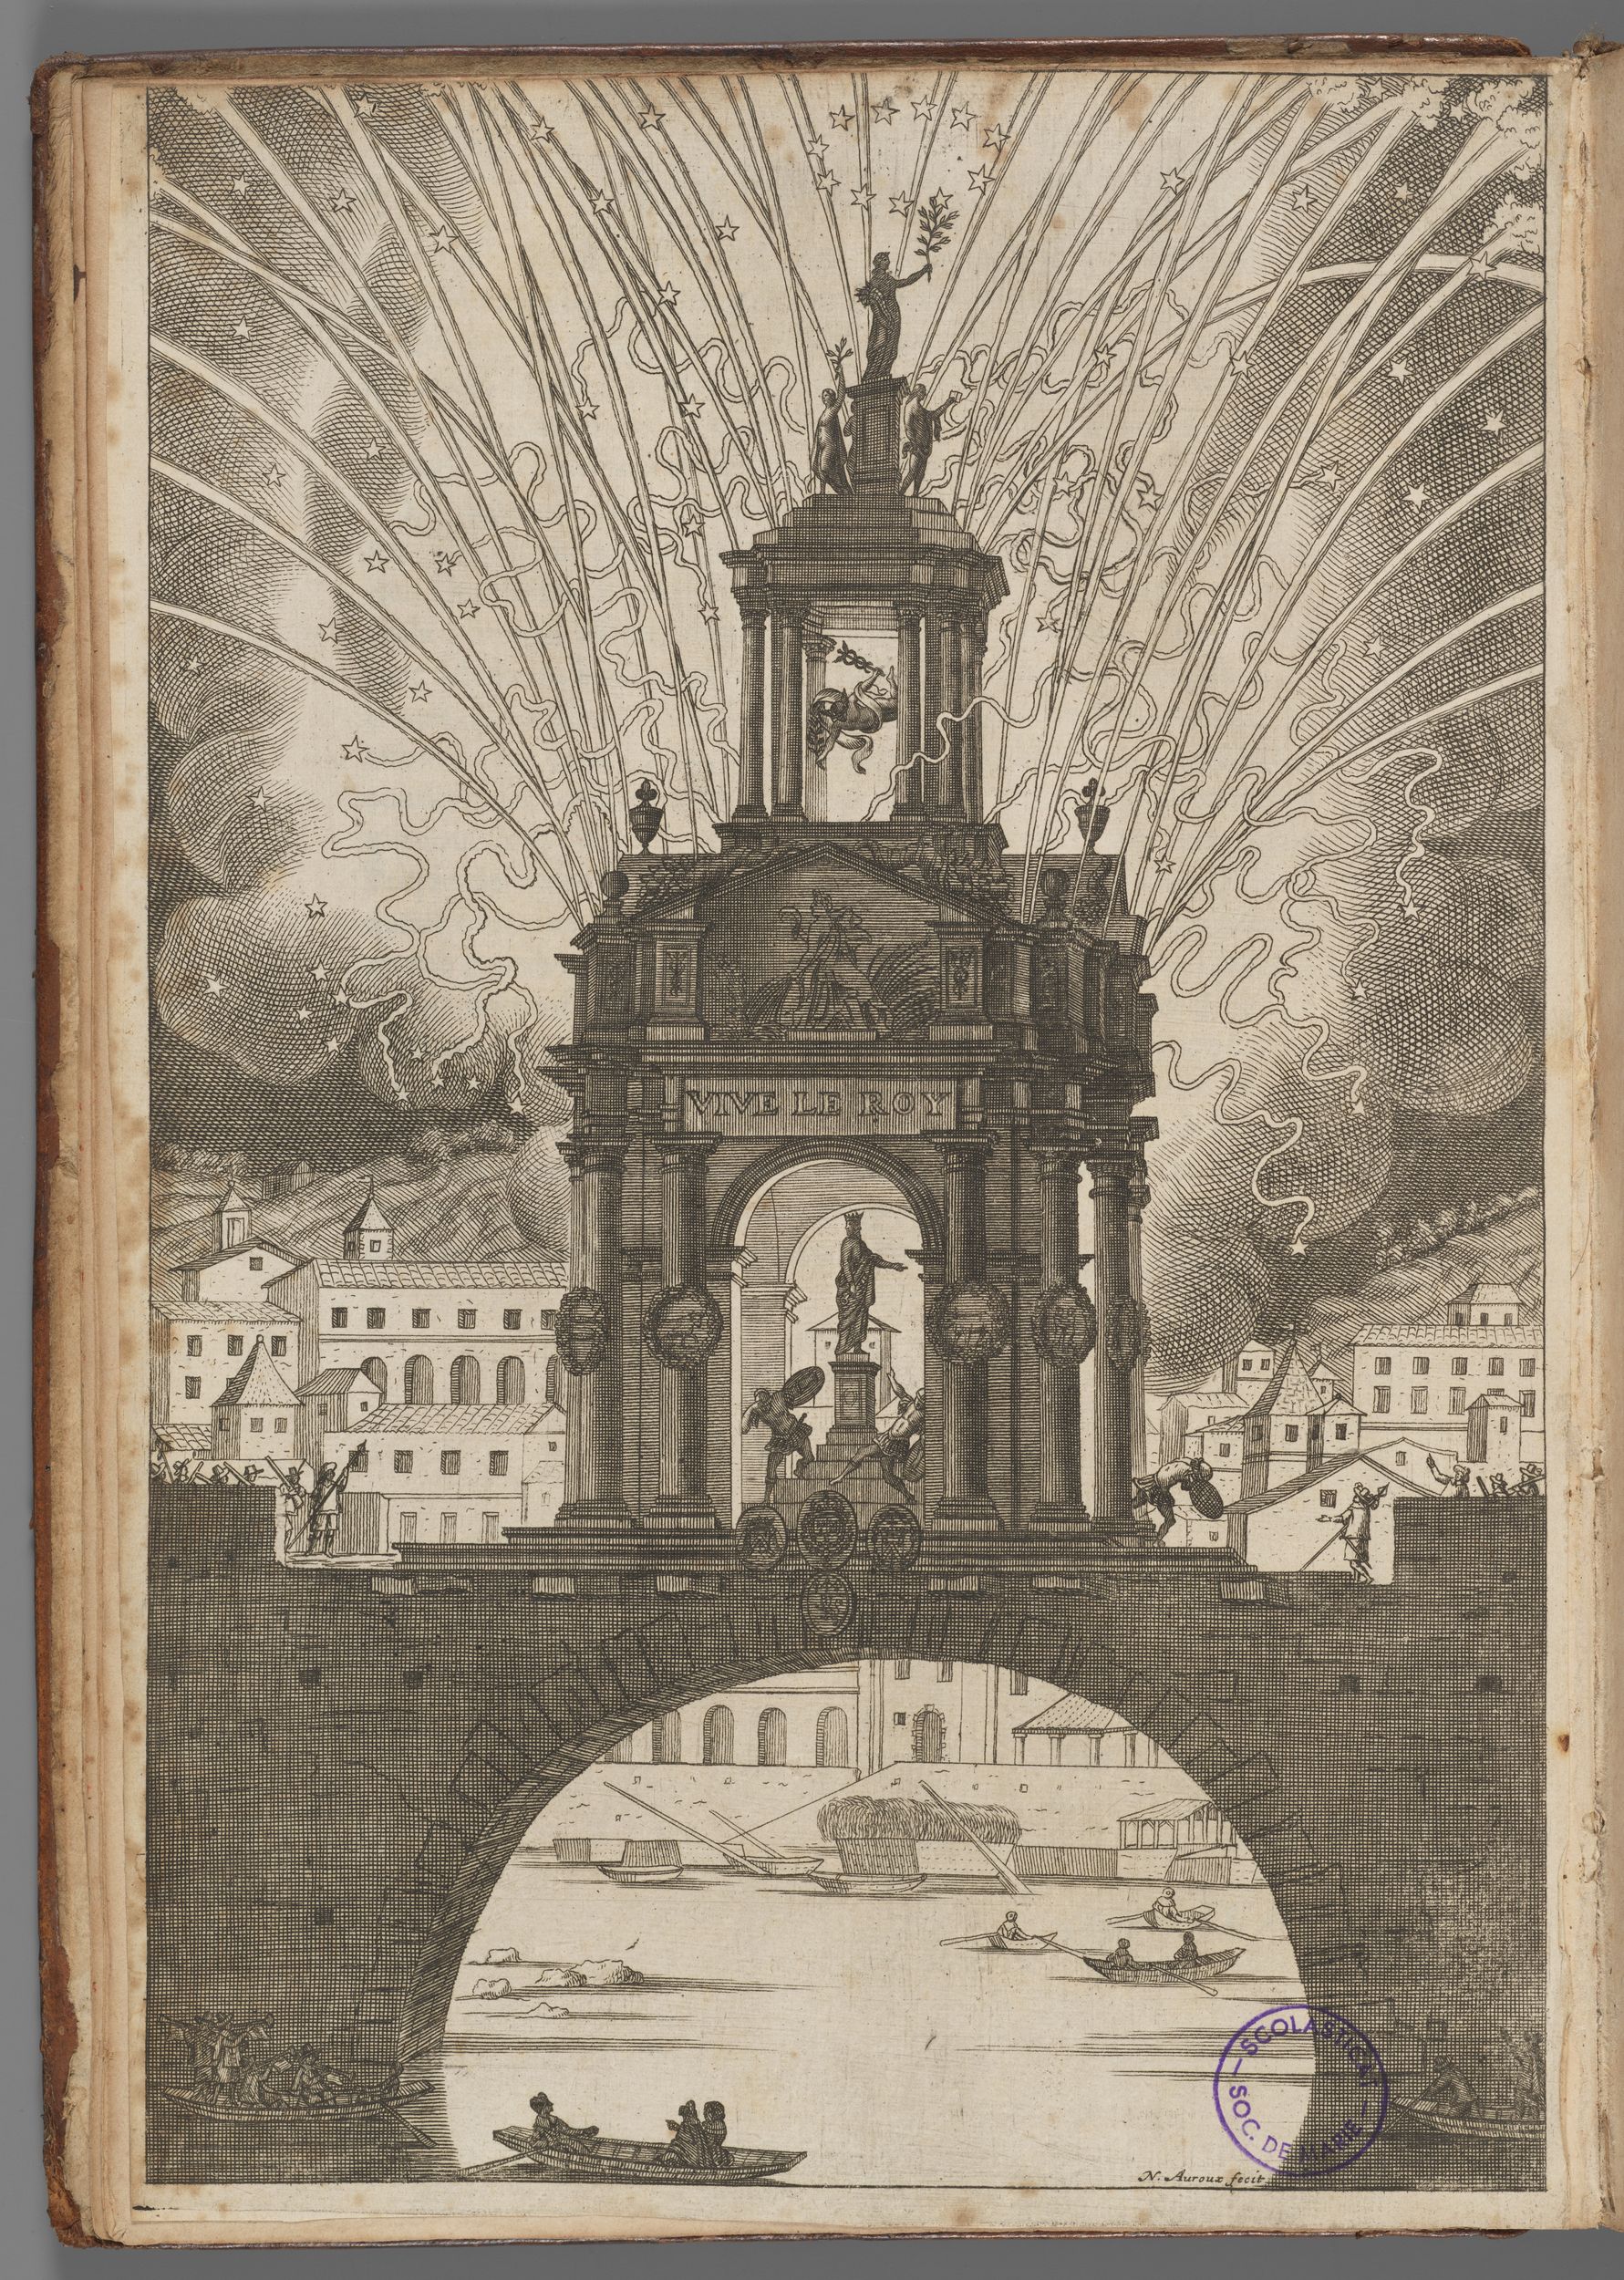 Les réjouissances de la paix, faites dans la ville de Lyon le 20 mars 1660 : gravure haute température (burin et eau-forte) par Guillaume Barbier et Jacques Justet (1660, cote : SM/57/RES pl. 2)